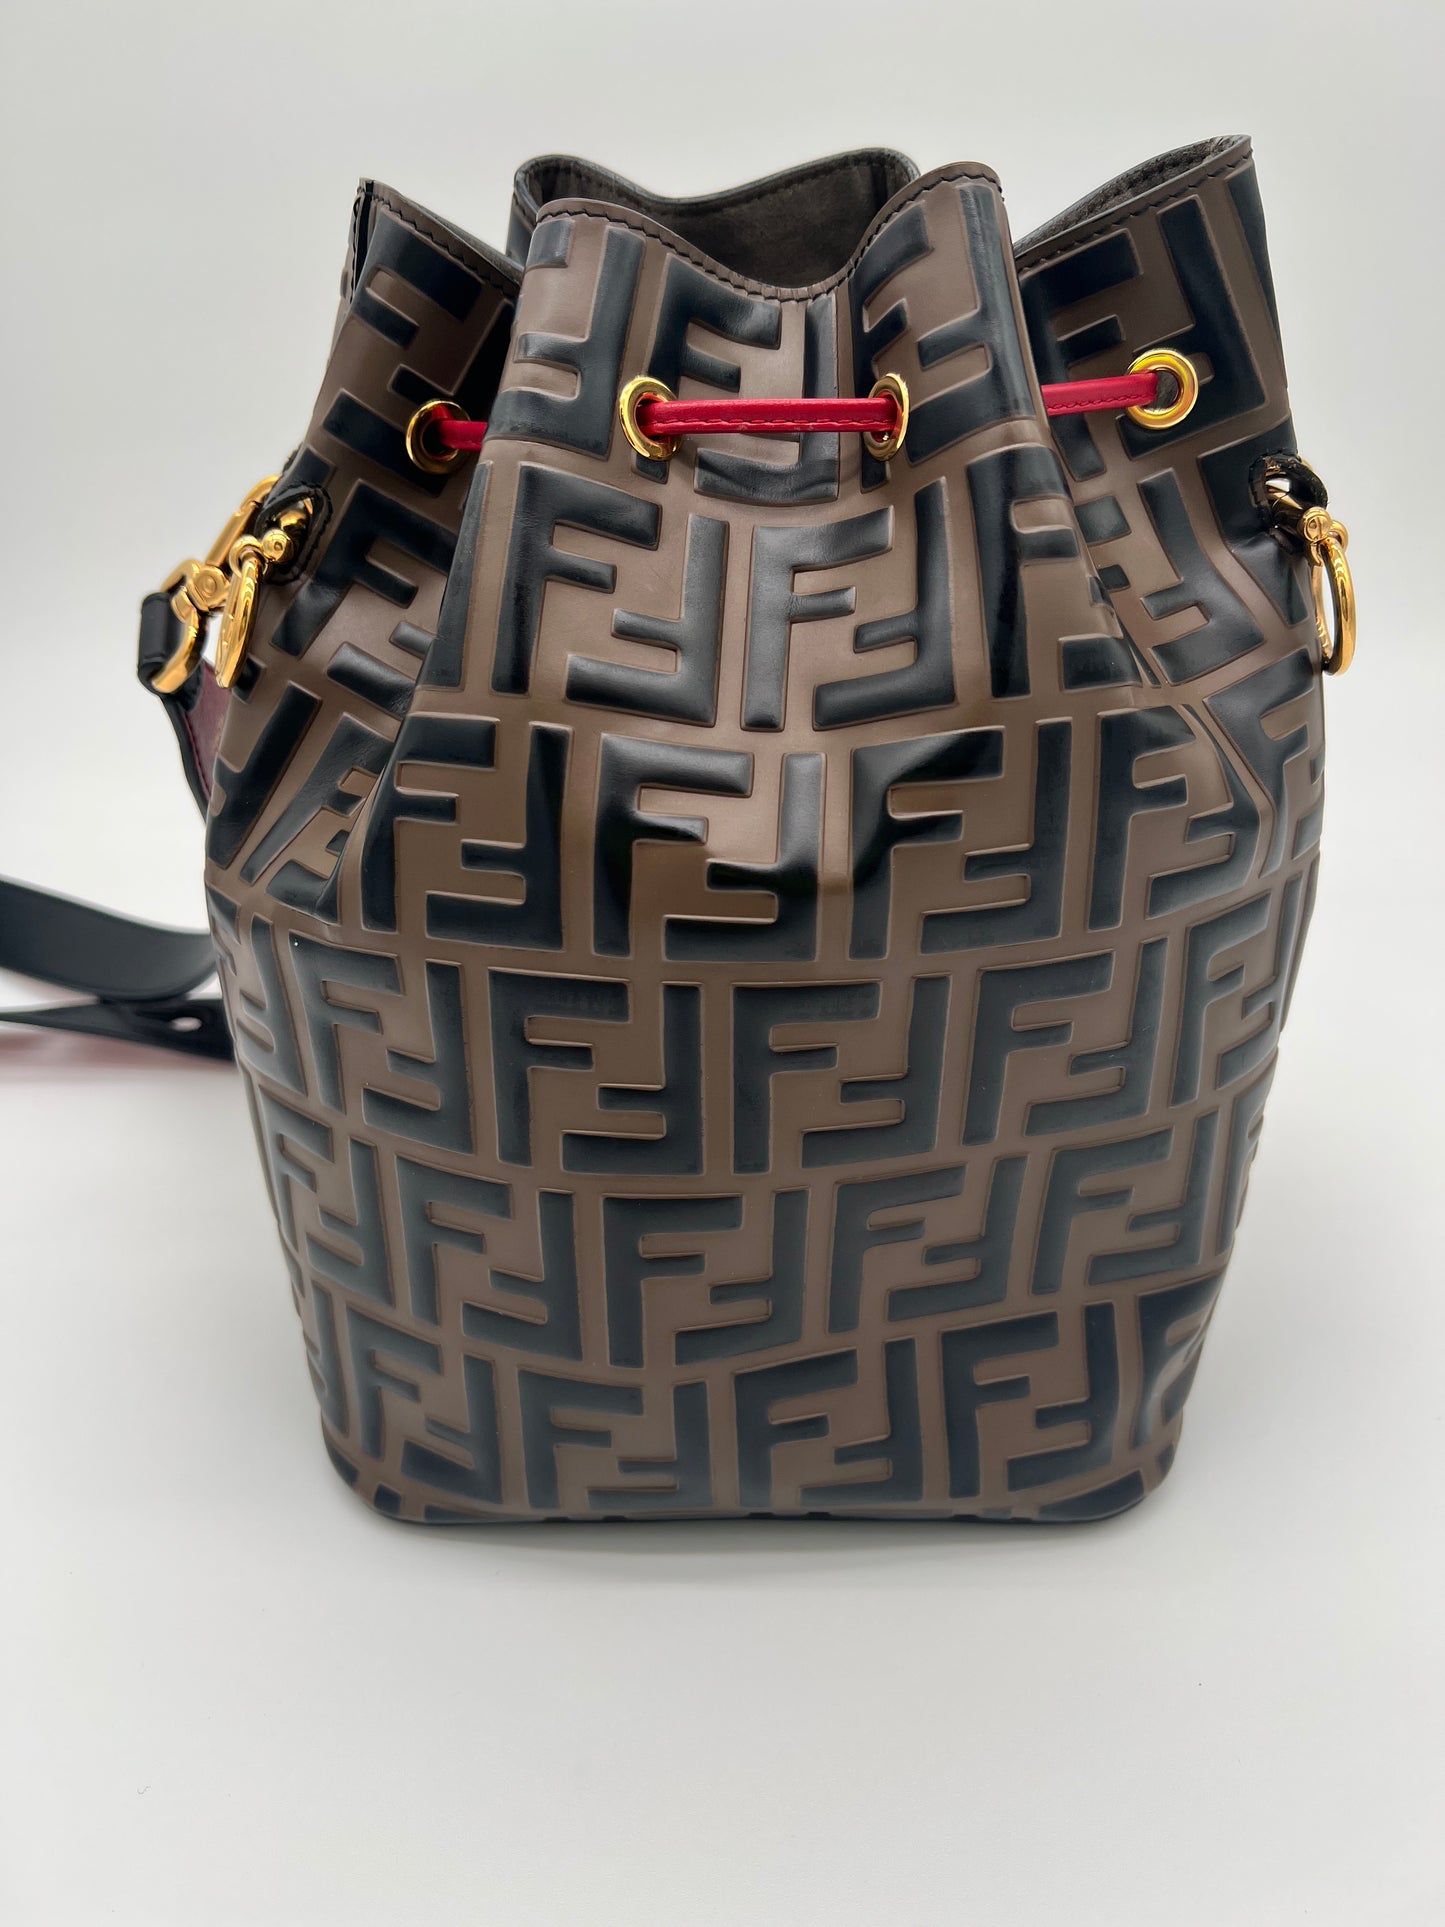 Fendi - Mon Tresor Red Logo Embossed Mini Bucket Bag